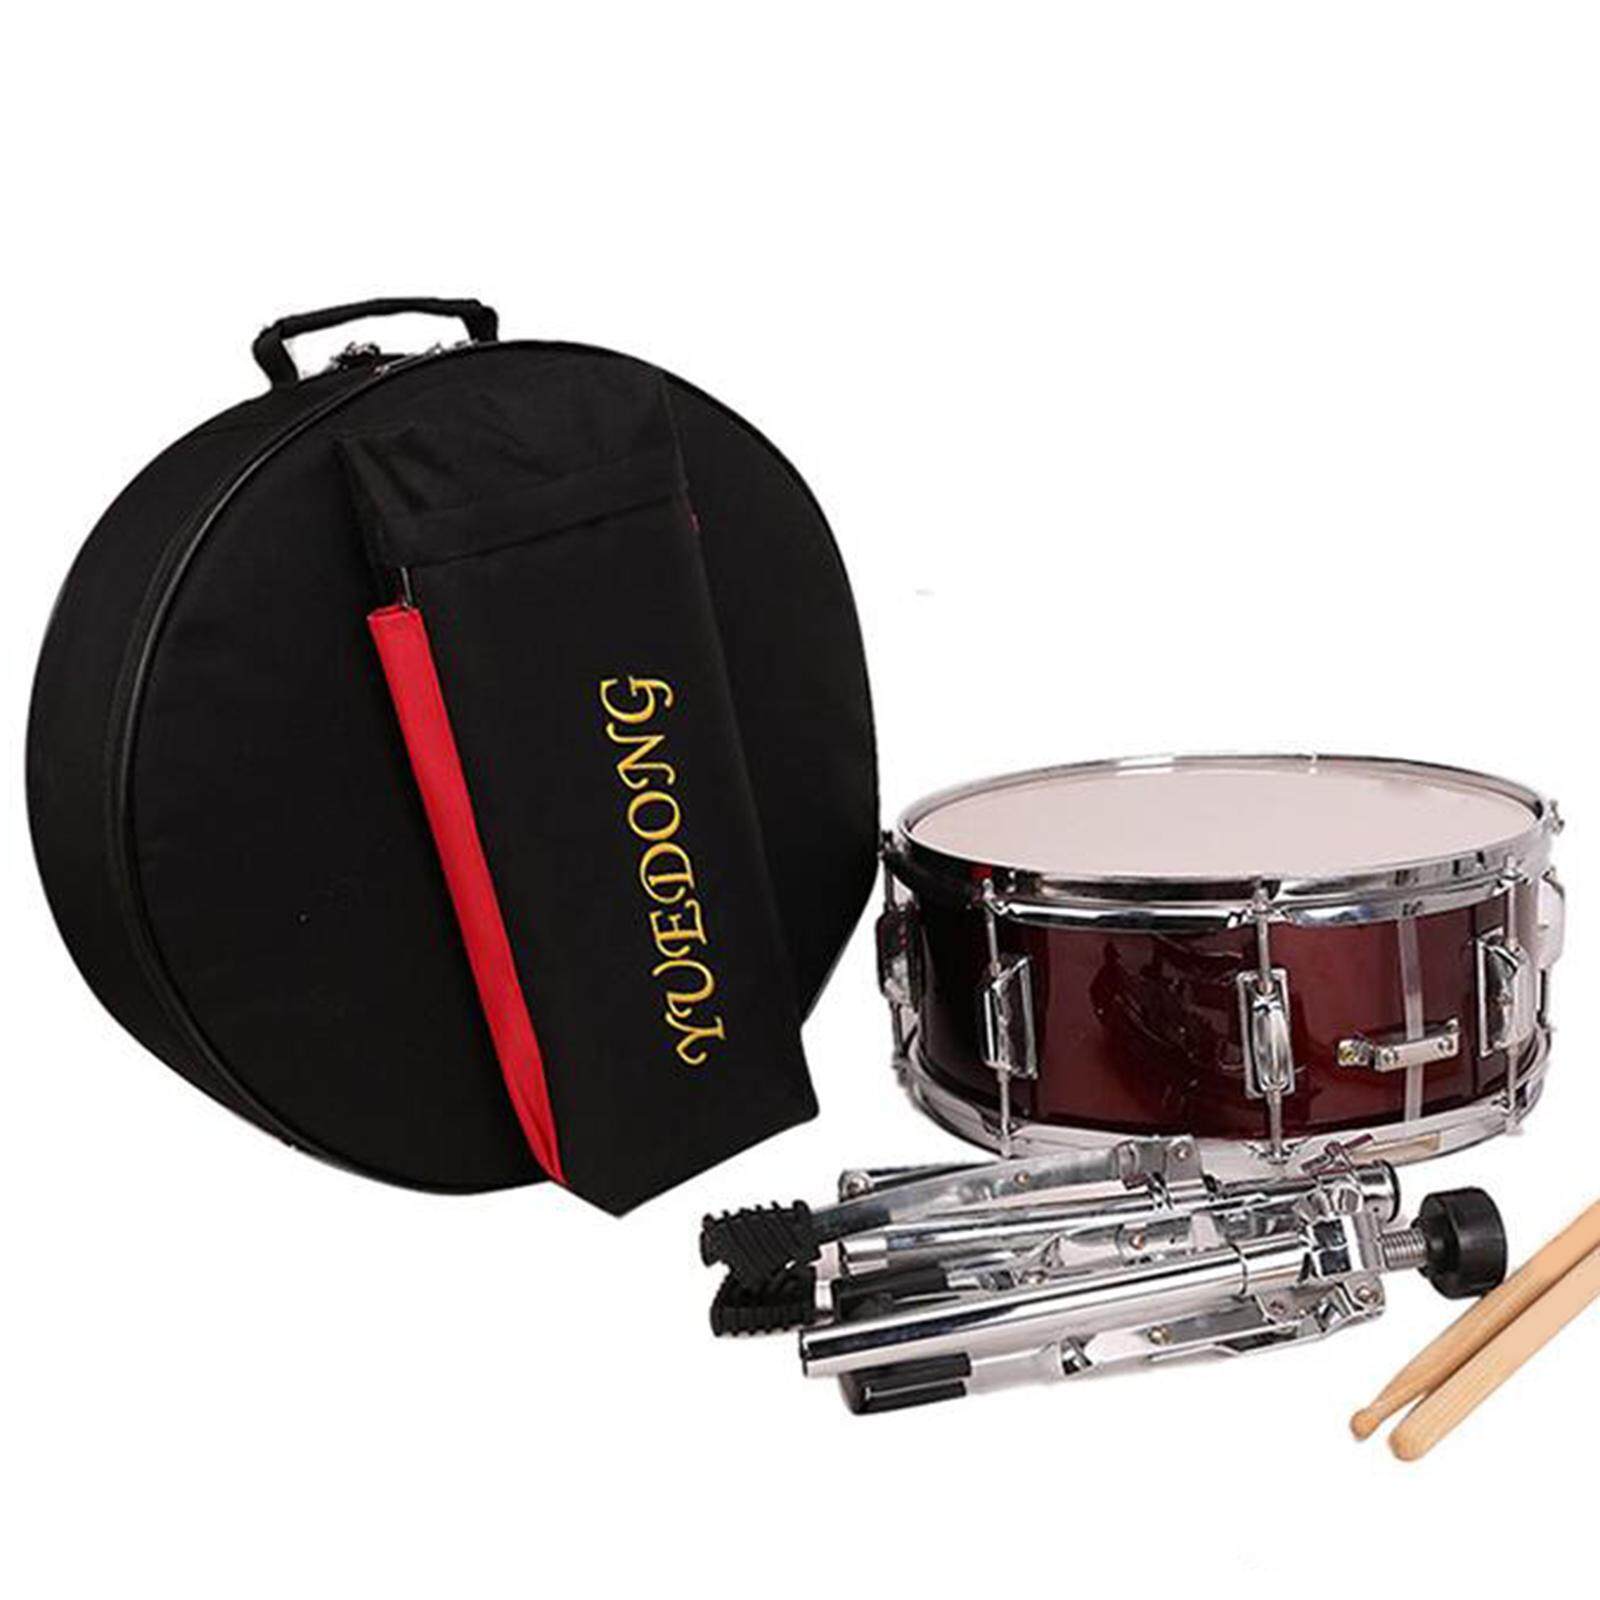 Baoblaze Snare Drum Bag Storage Bag Oxford Cloth with Shoulder Strap